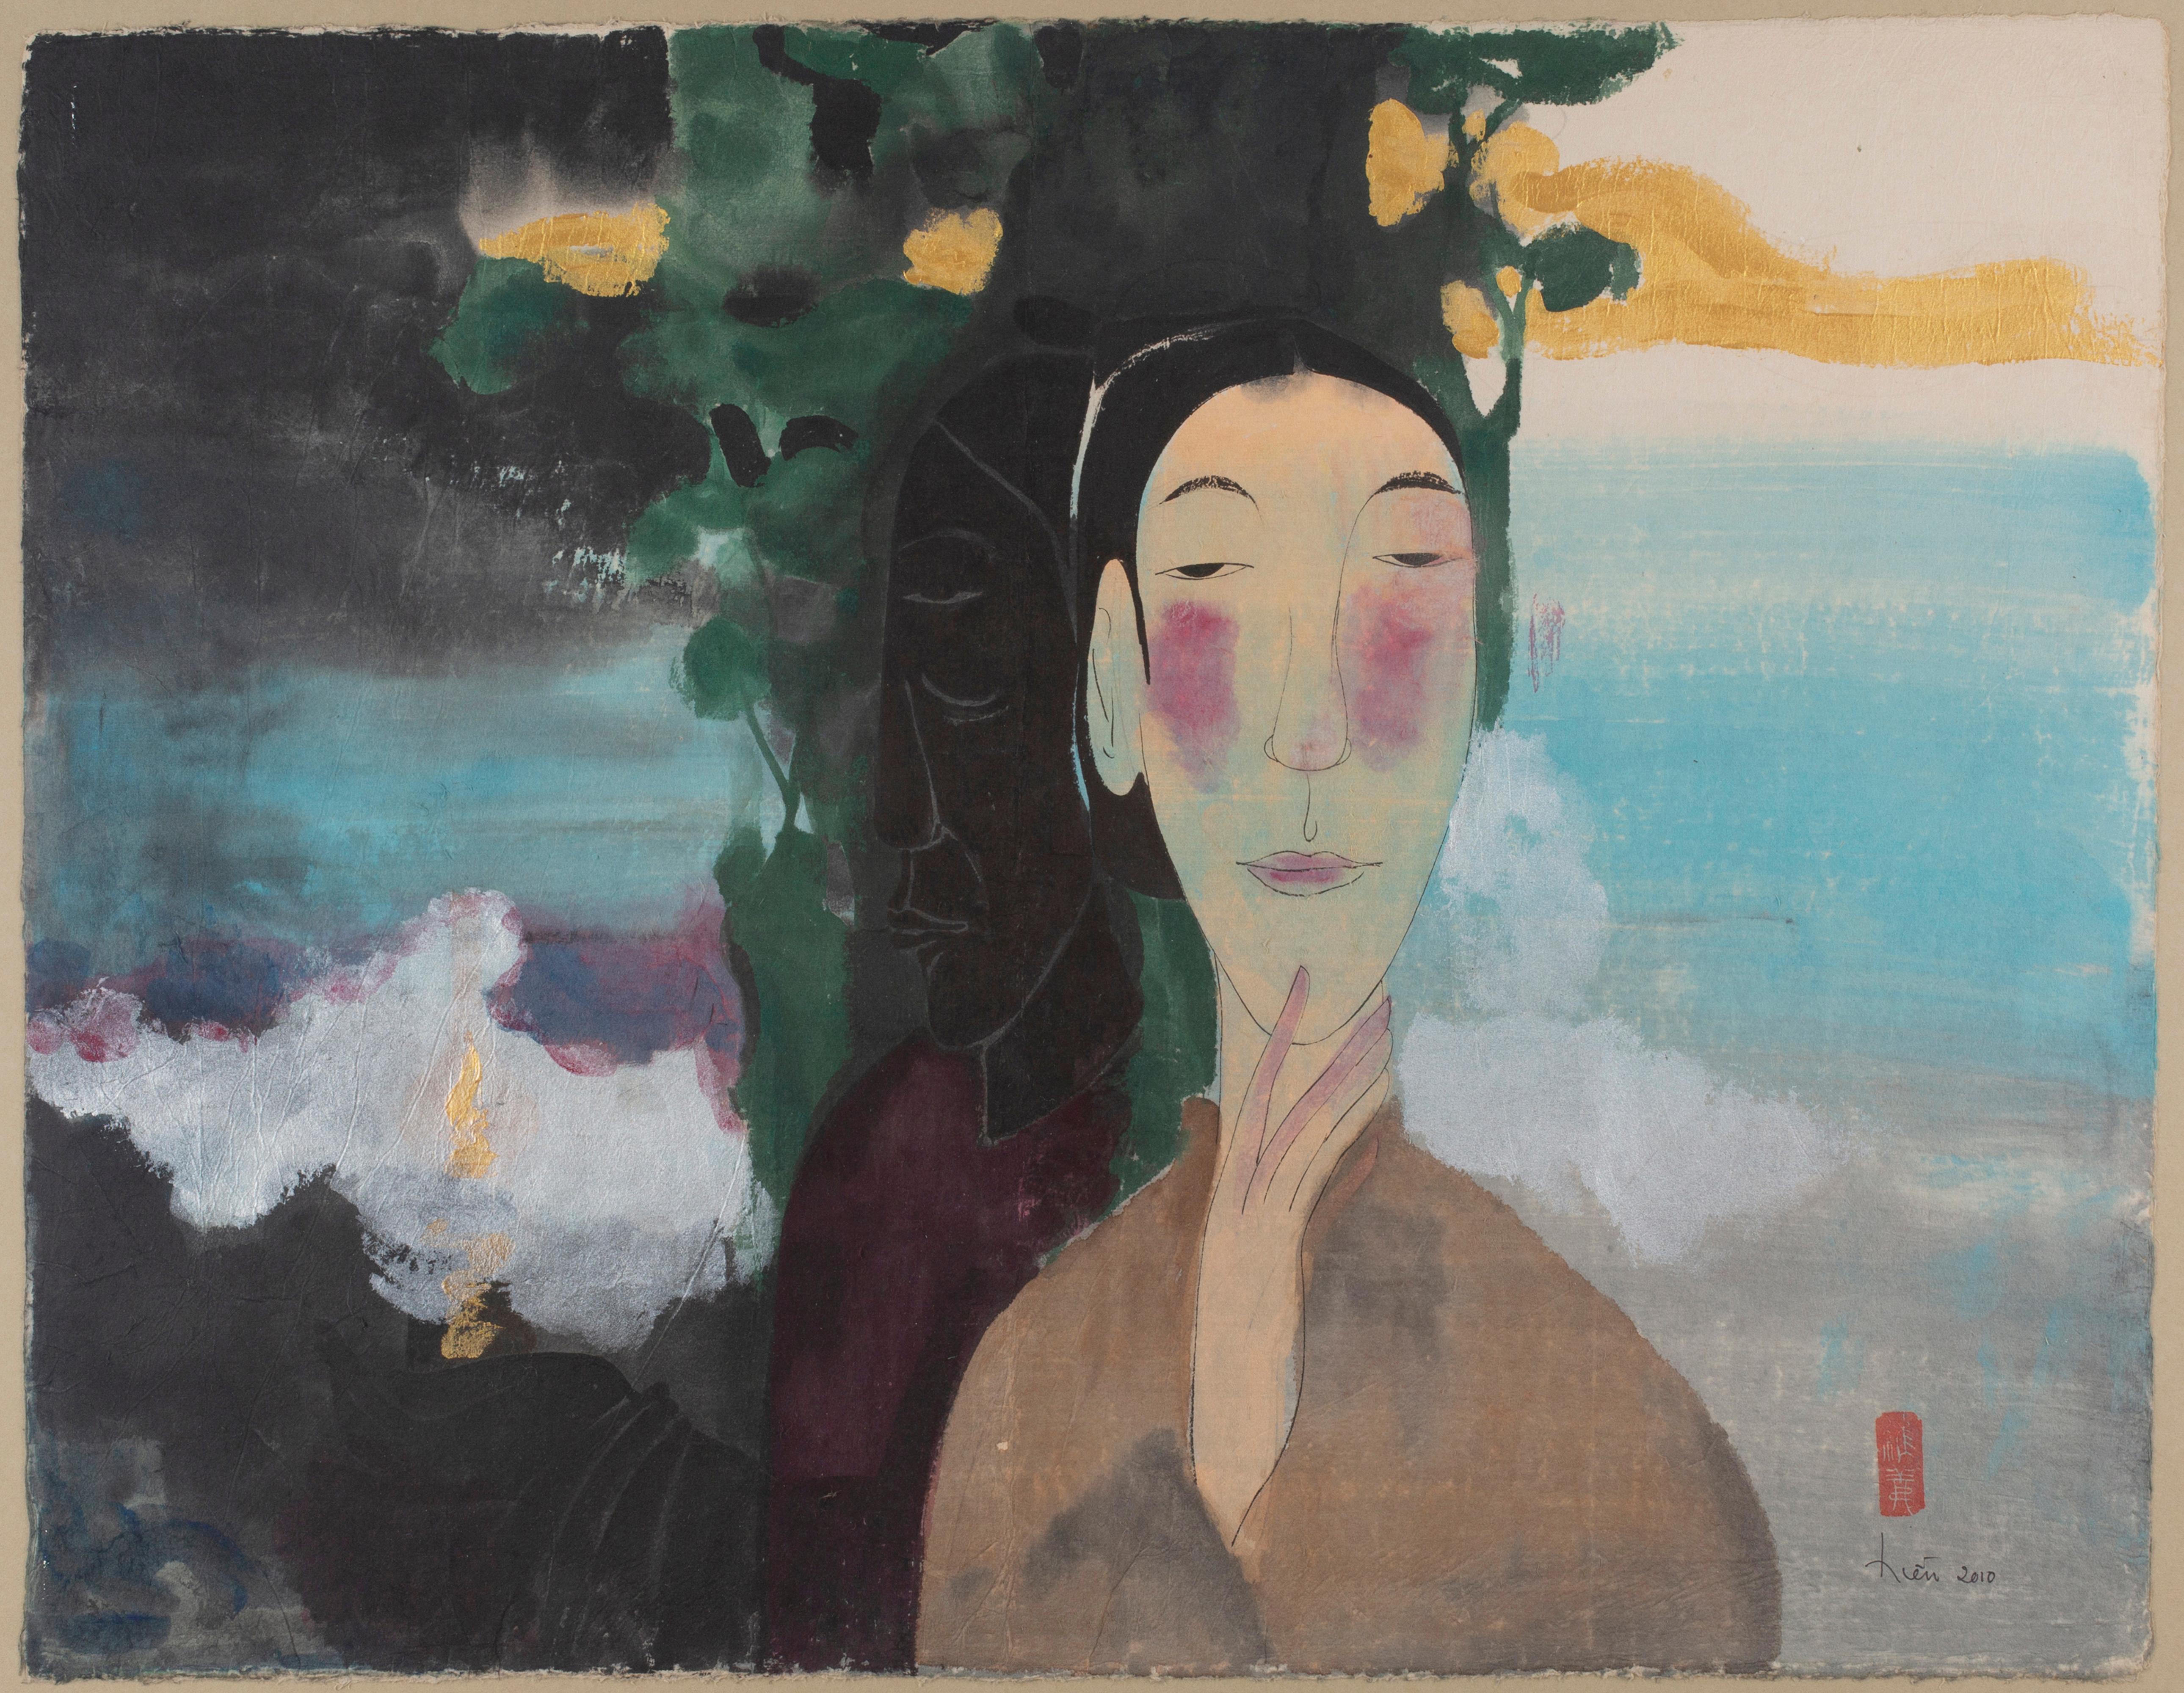 Vu Thu Hien Figurative Art - 'Spiritual Echo' Conceptual Portrait Painting Watercolor, Pastel colors